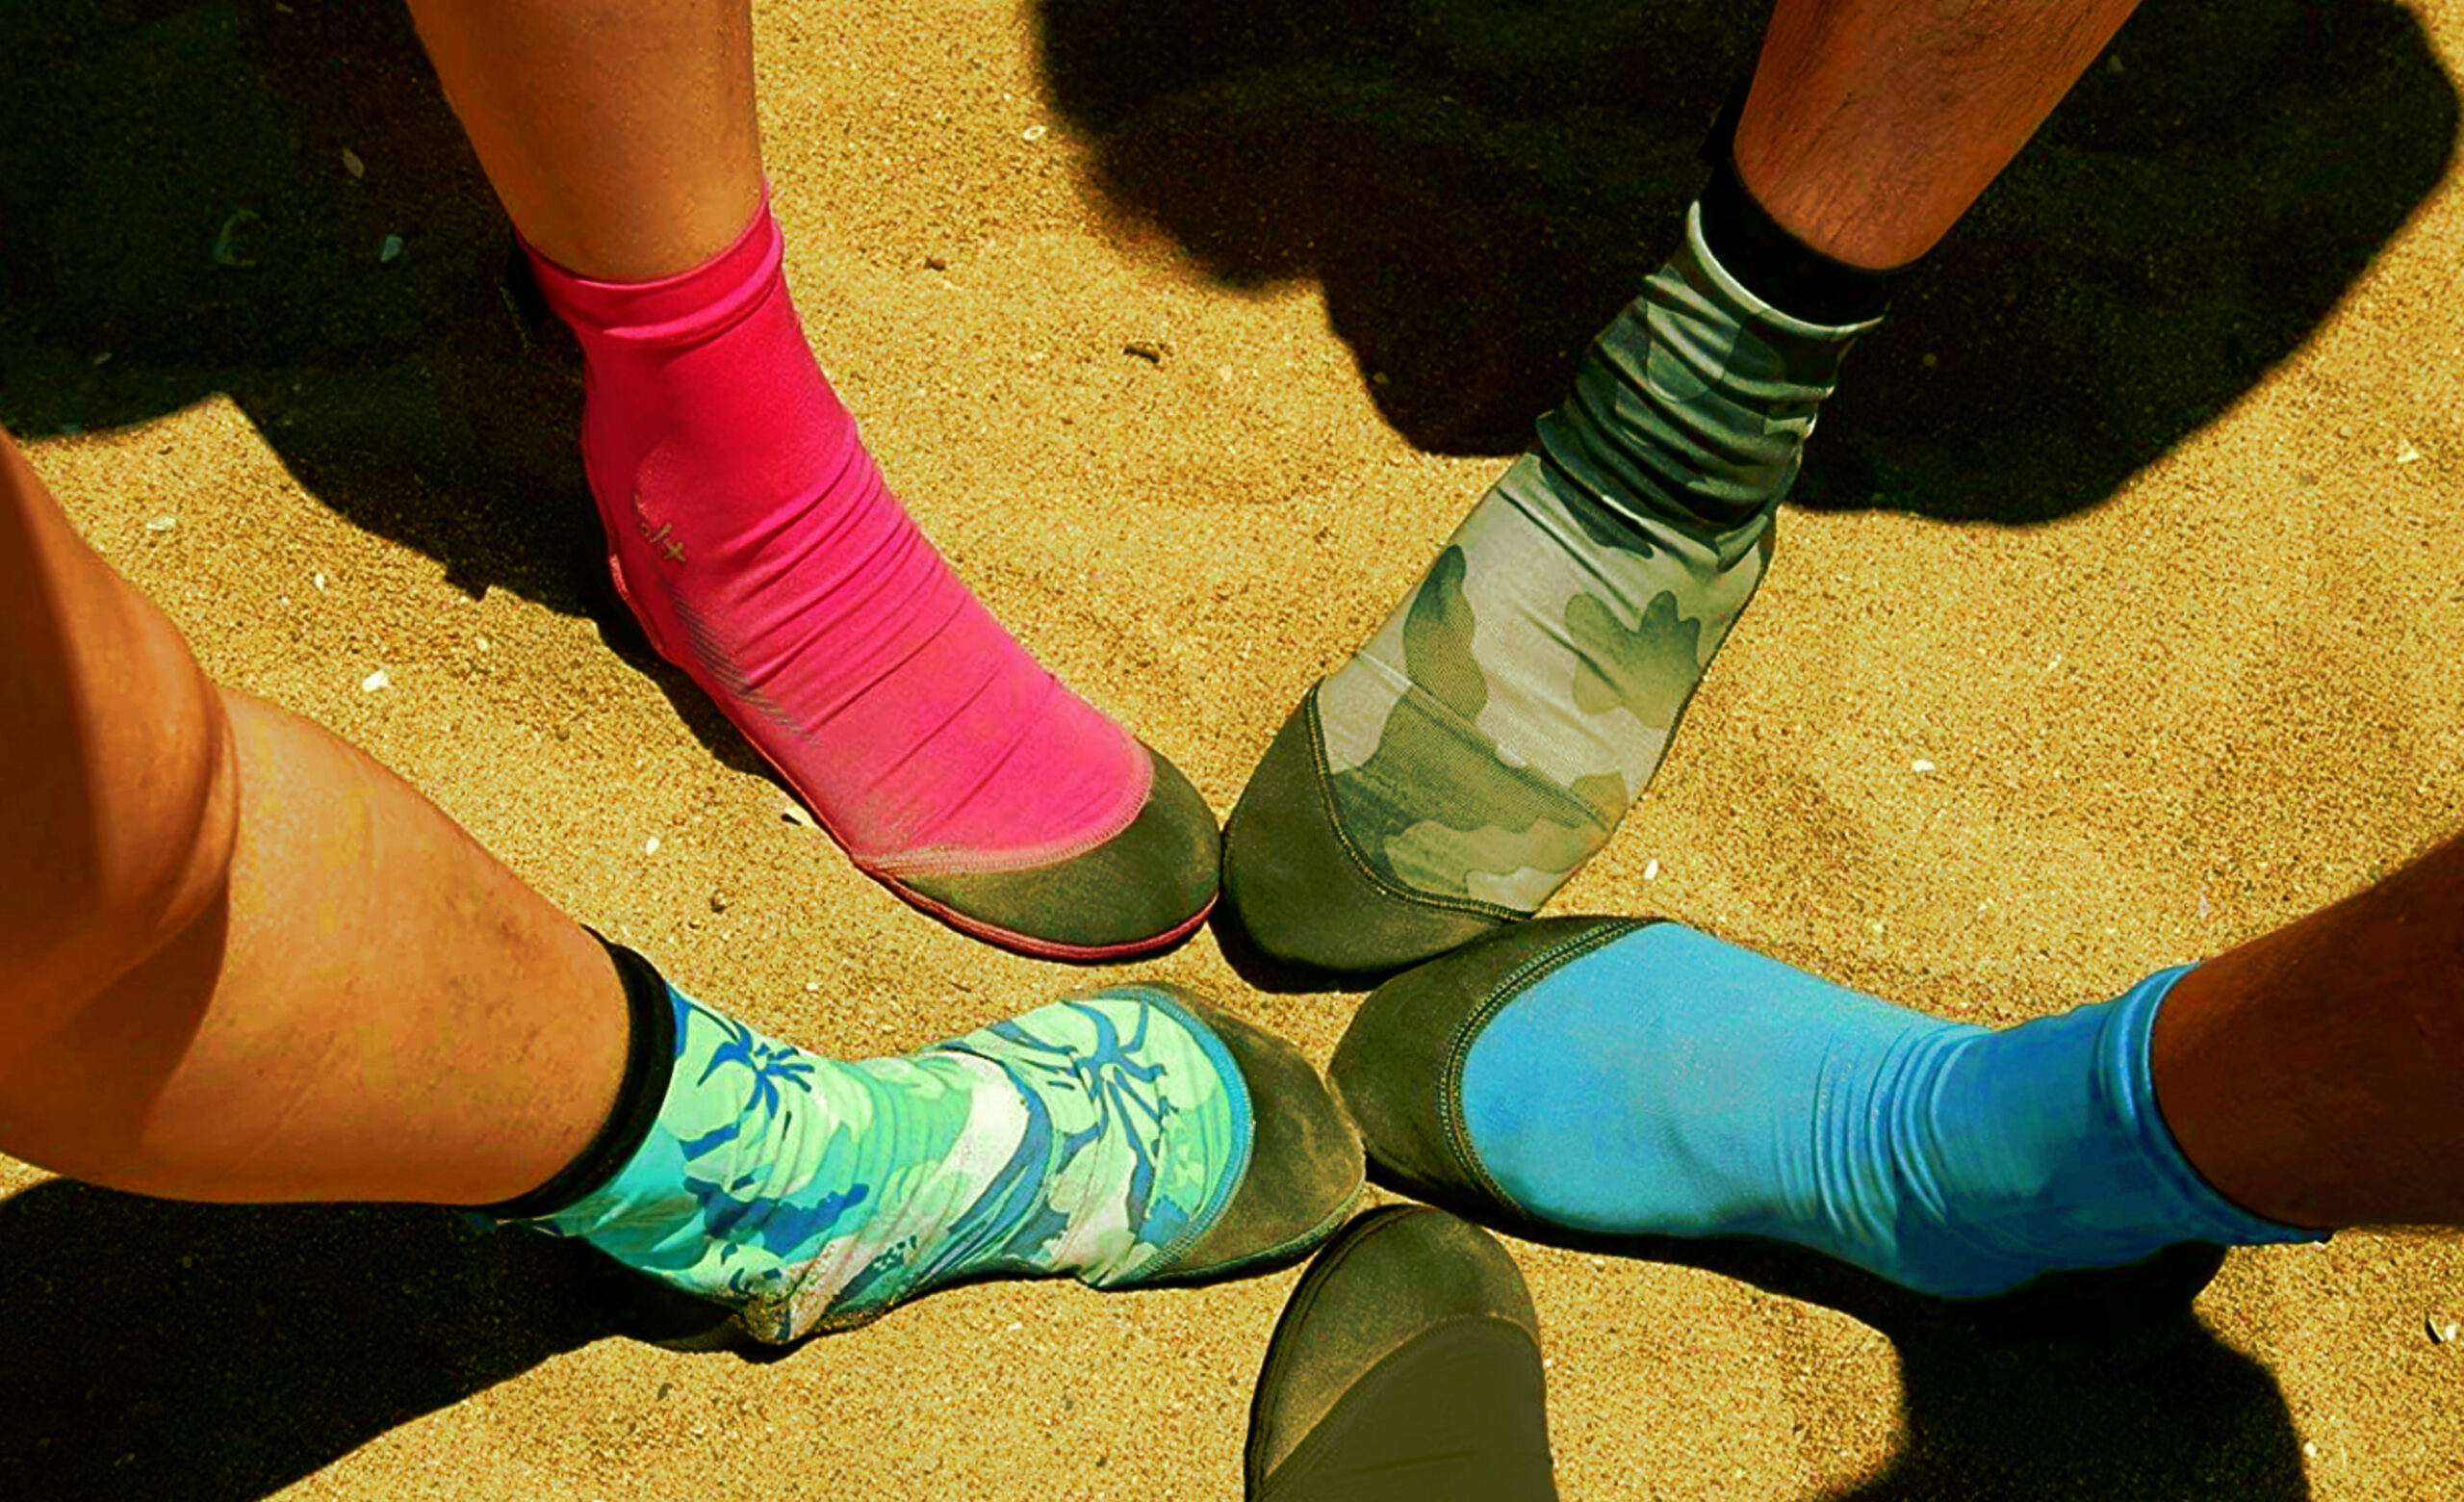 Κάλτσες άμμου - για Μπιτς Βόλεϊ, Ποδόσφαιρο, Σέρφινγκ κλπ.